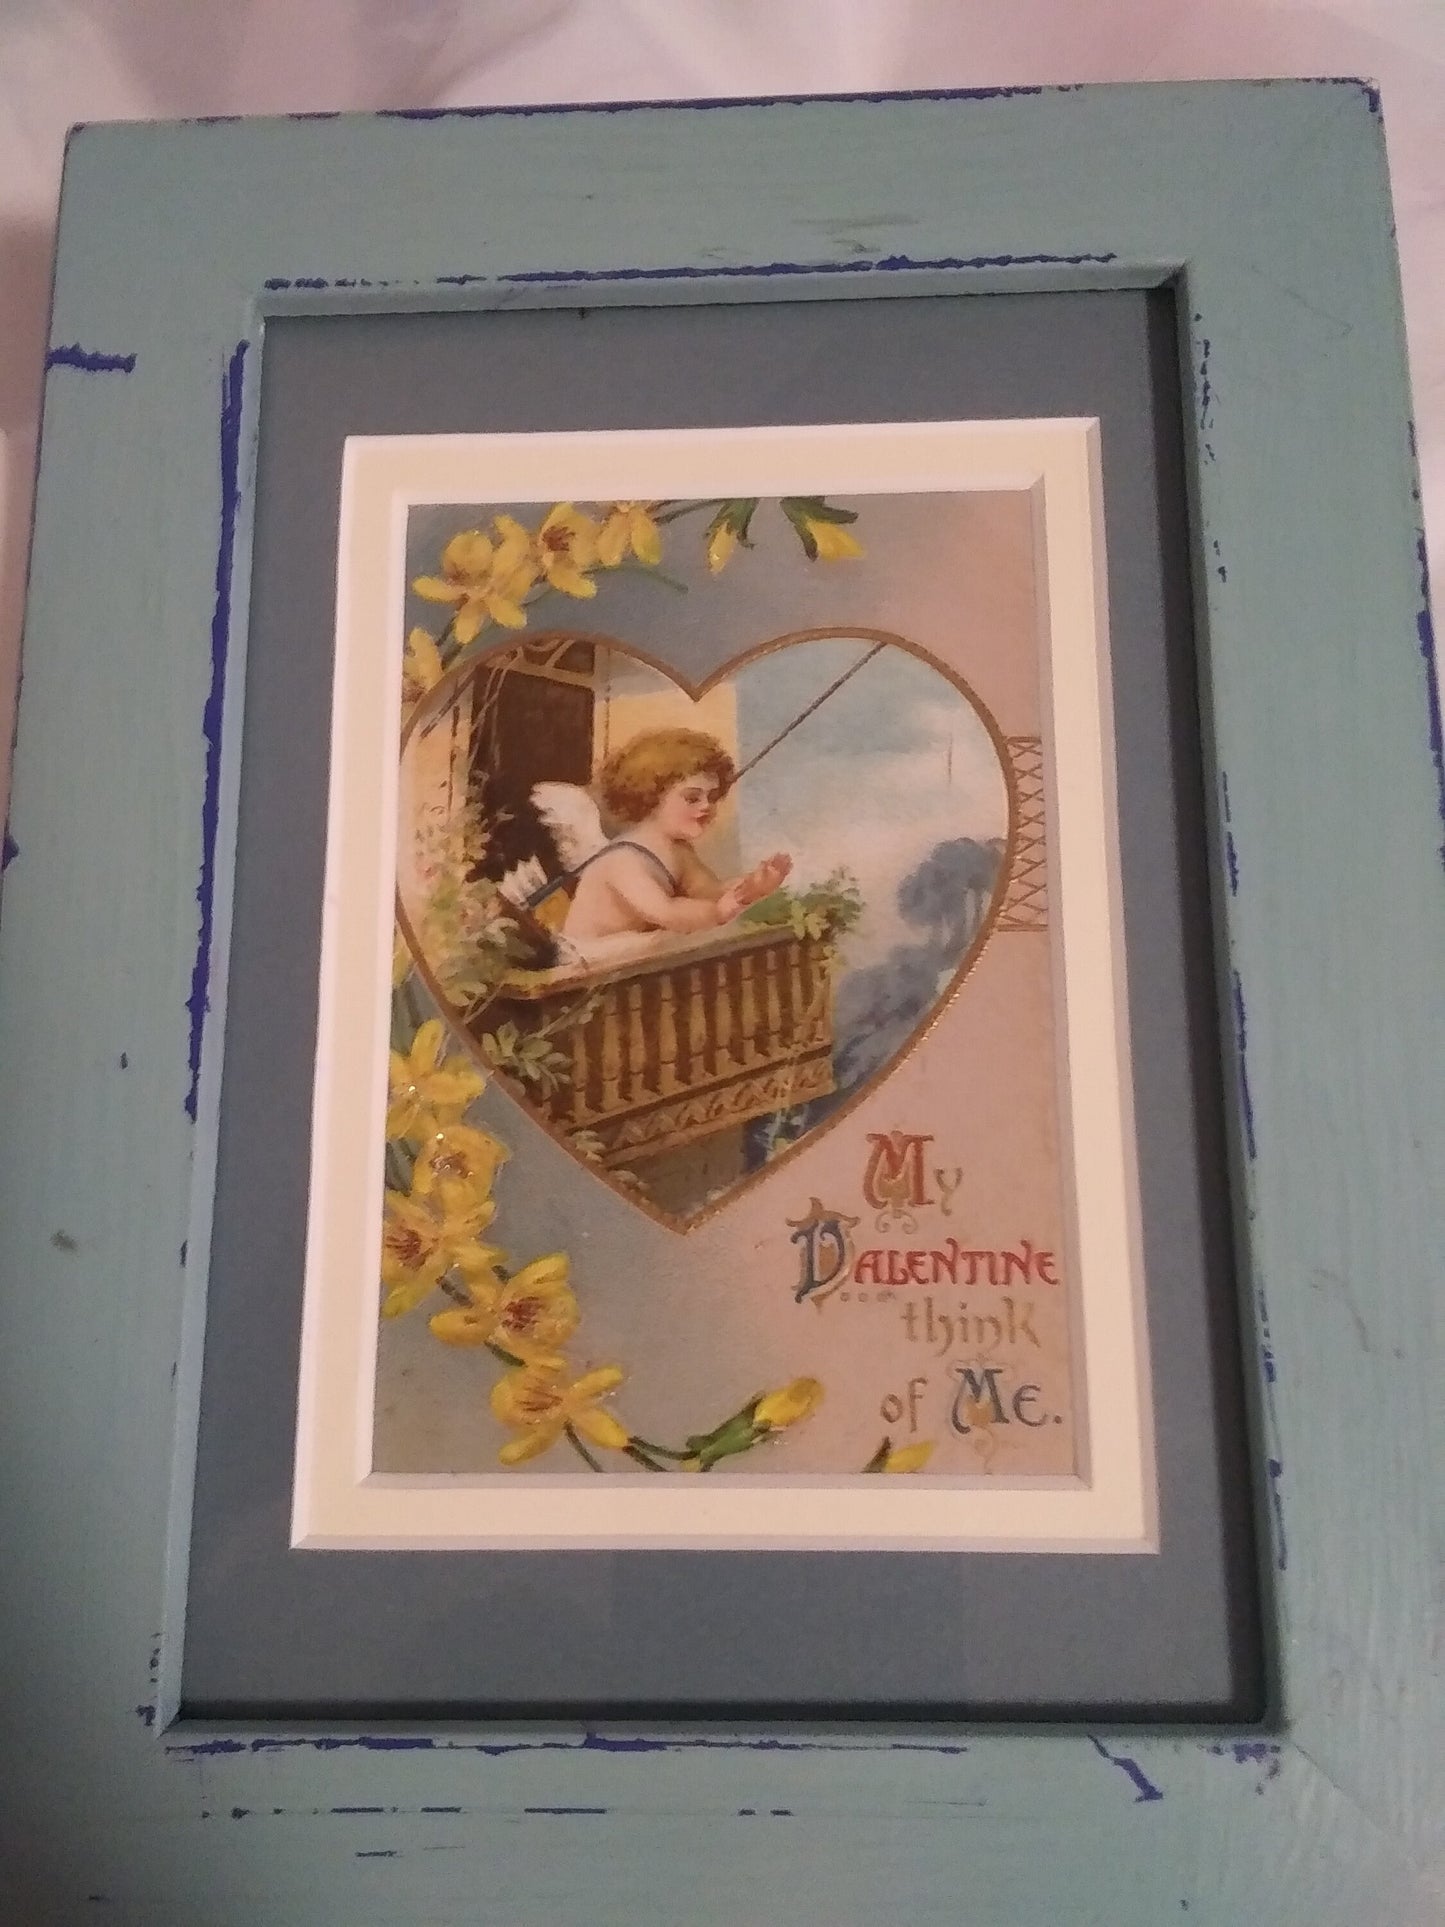 Vintage Valentine's Day Framed Card